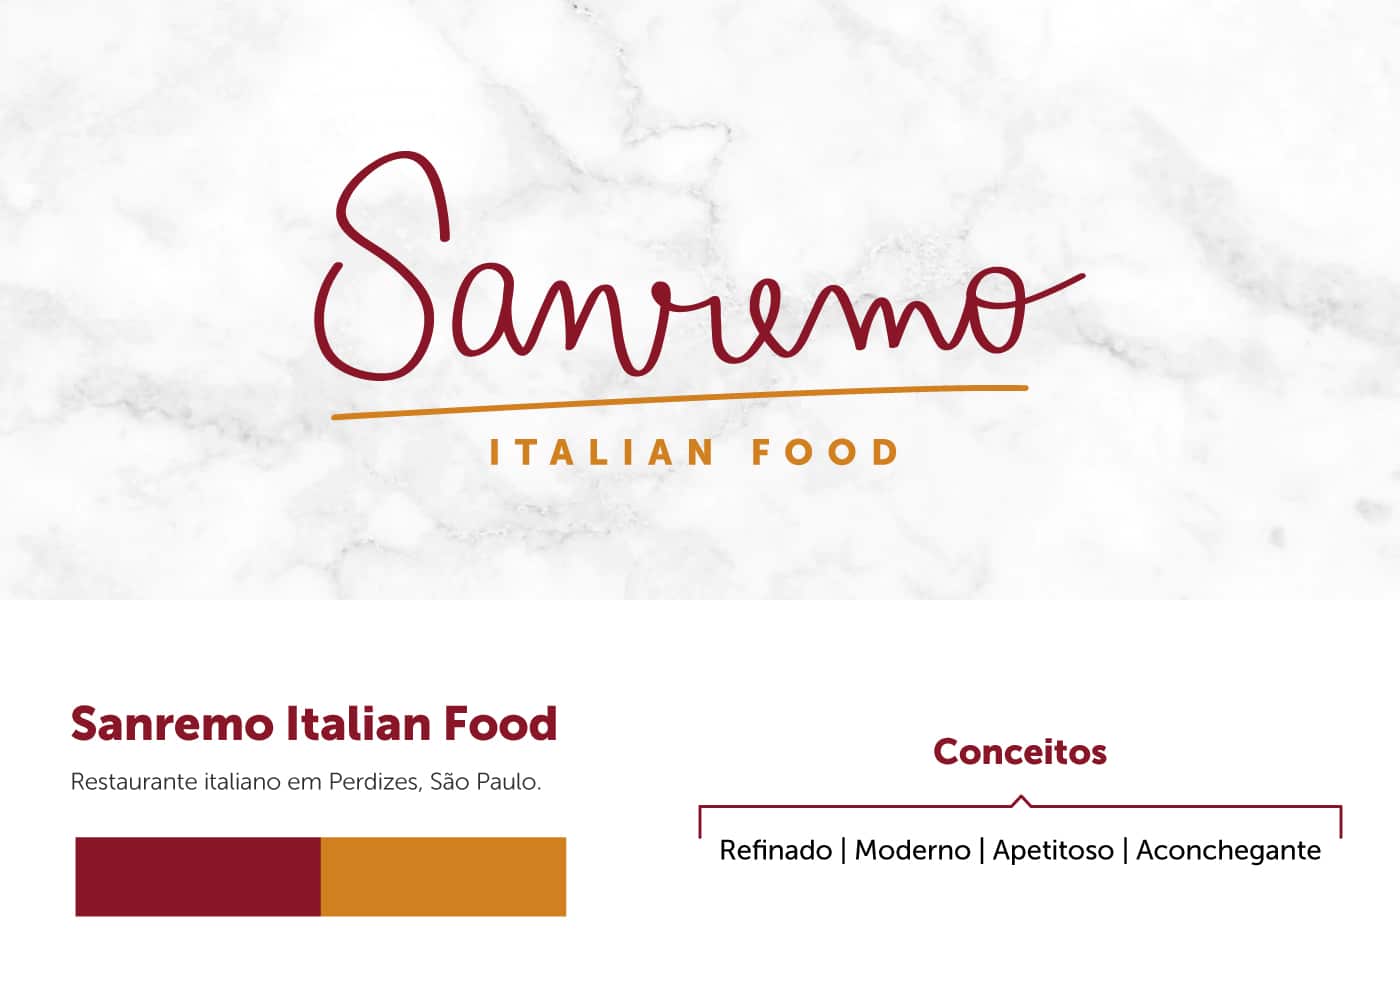 Aplicação da Marca Sanremo em fundo texturizado como mármore. A marca Sanremo é um texto em tipografia caligráfica na cor vinho e uma assinatura abaixo escrito "italian food" em amarelo.